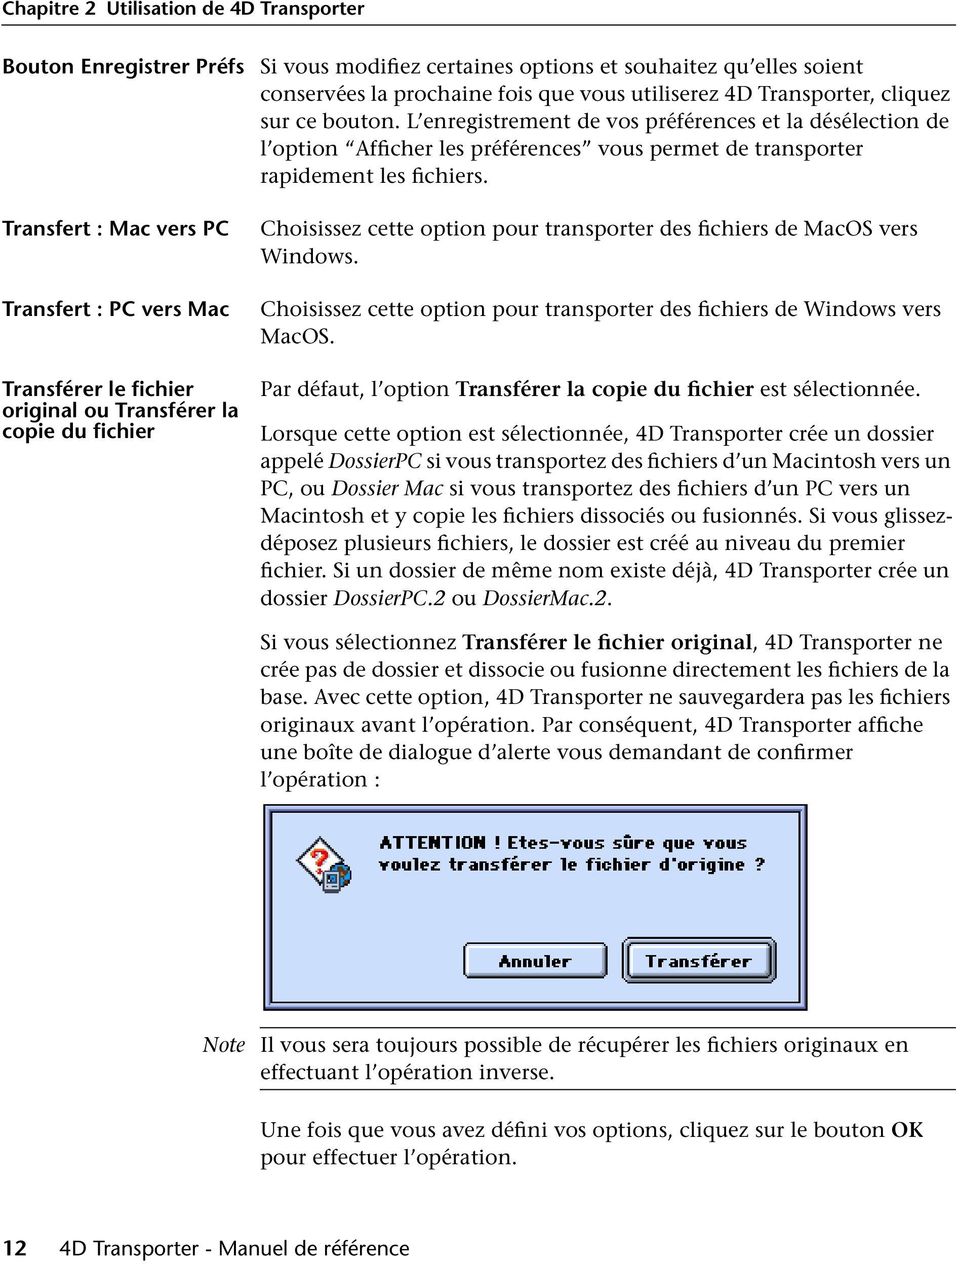 Transfert : Mac vers PC Transfert : PC vers Mac Transférer le fichier original ou Transférer la copie du fichier Choisissez cette option pour transporter des fichiers de MacOS vers Windows.